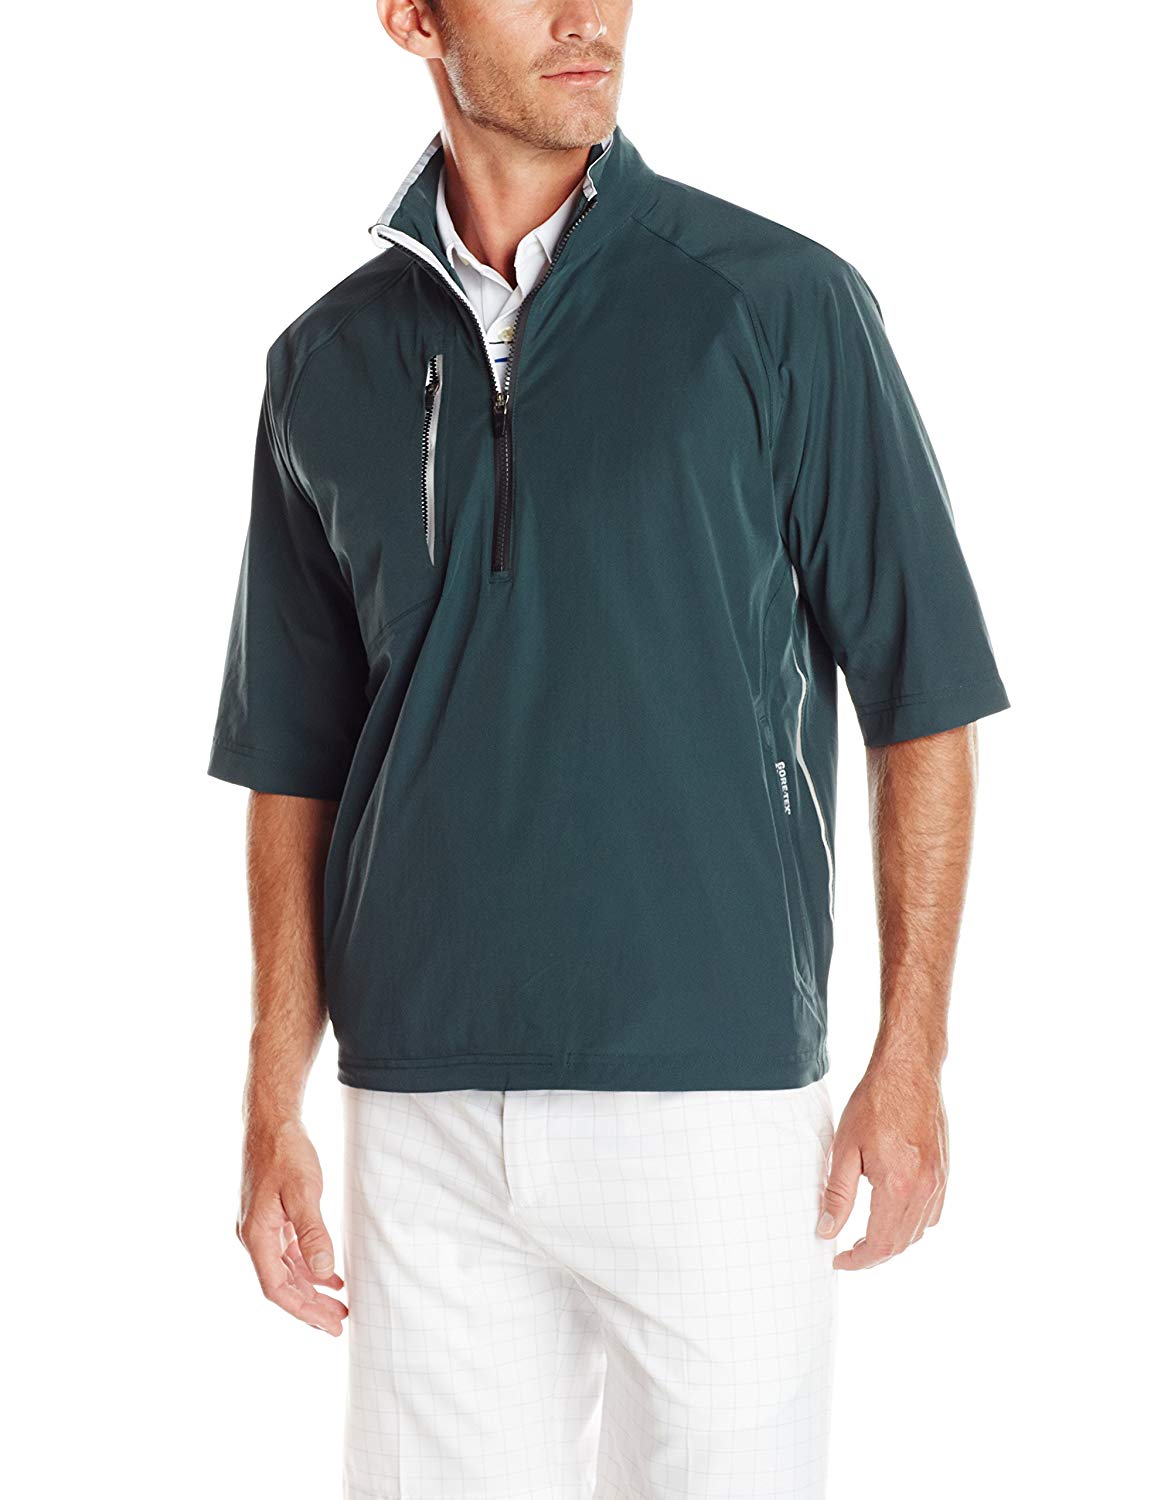 Mens Zero Restriction Stealth Gore-Tex Rain Golf Jackets